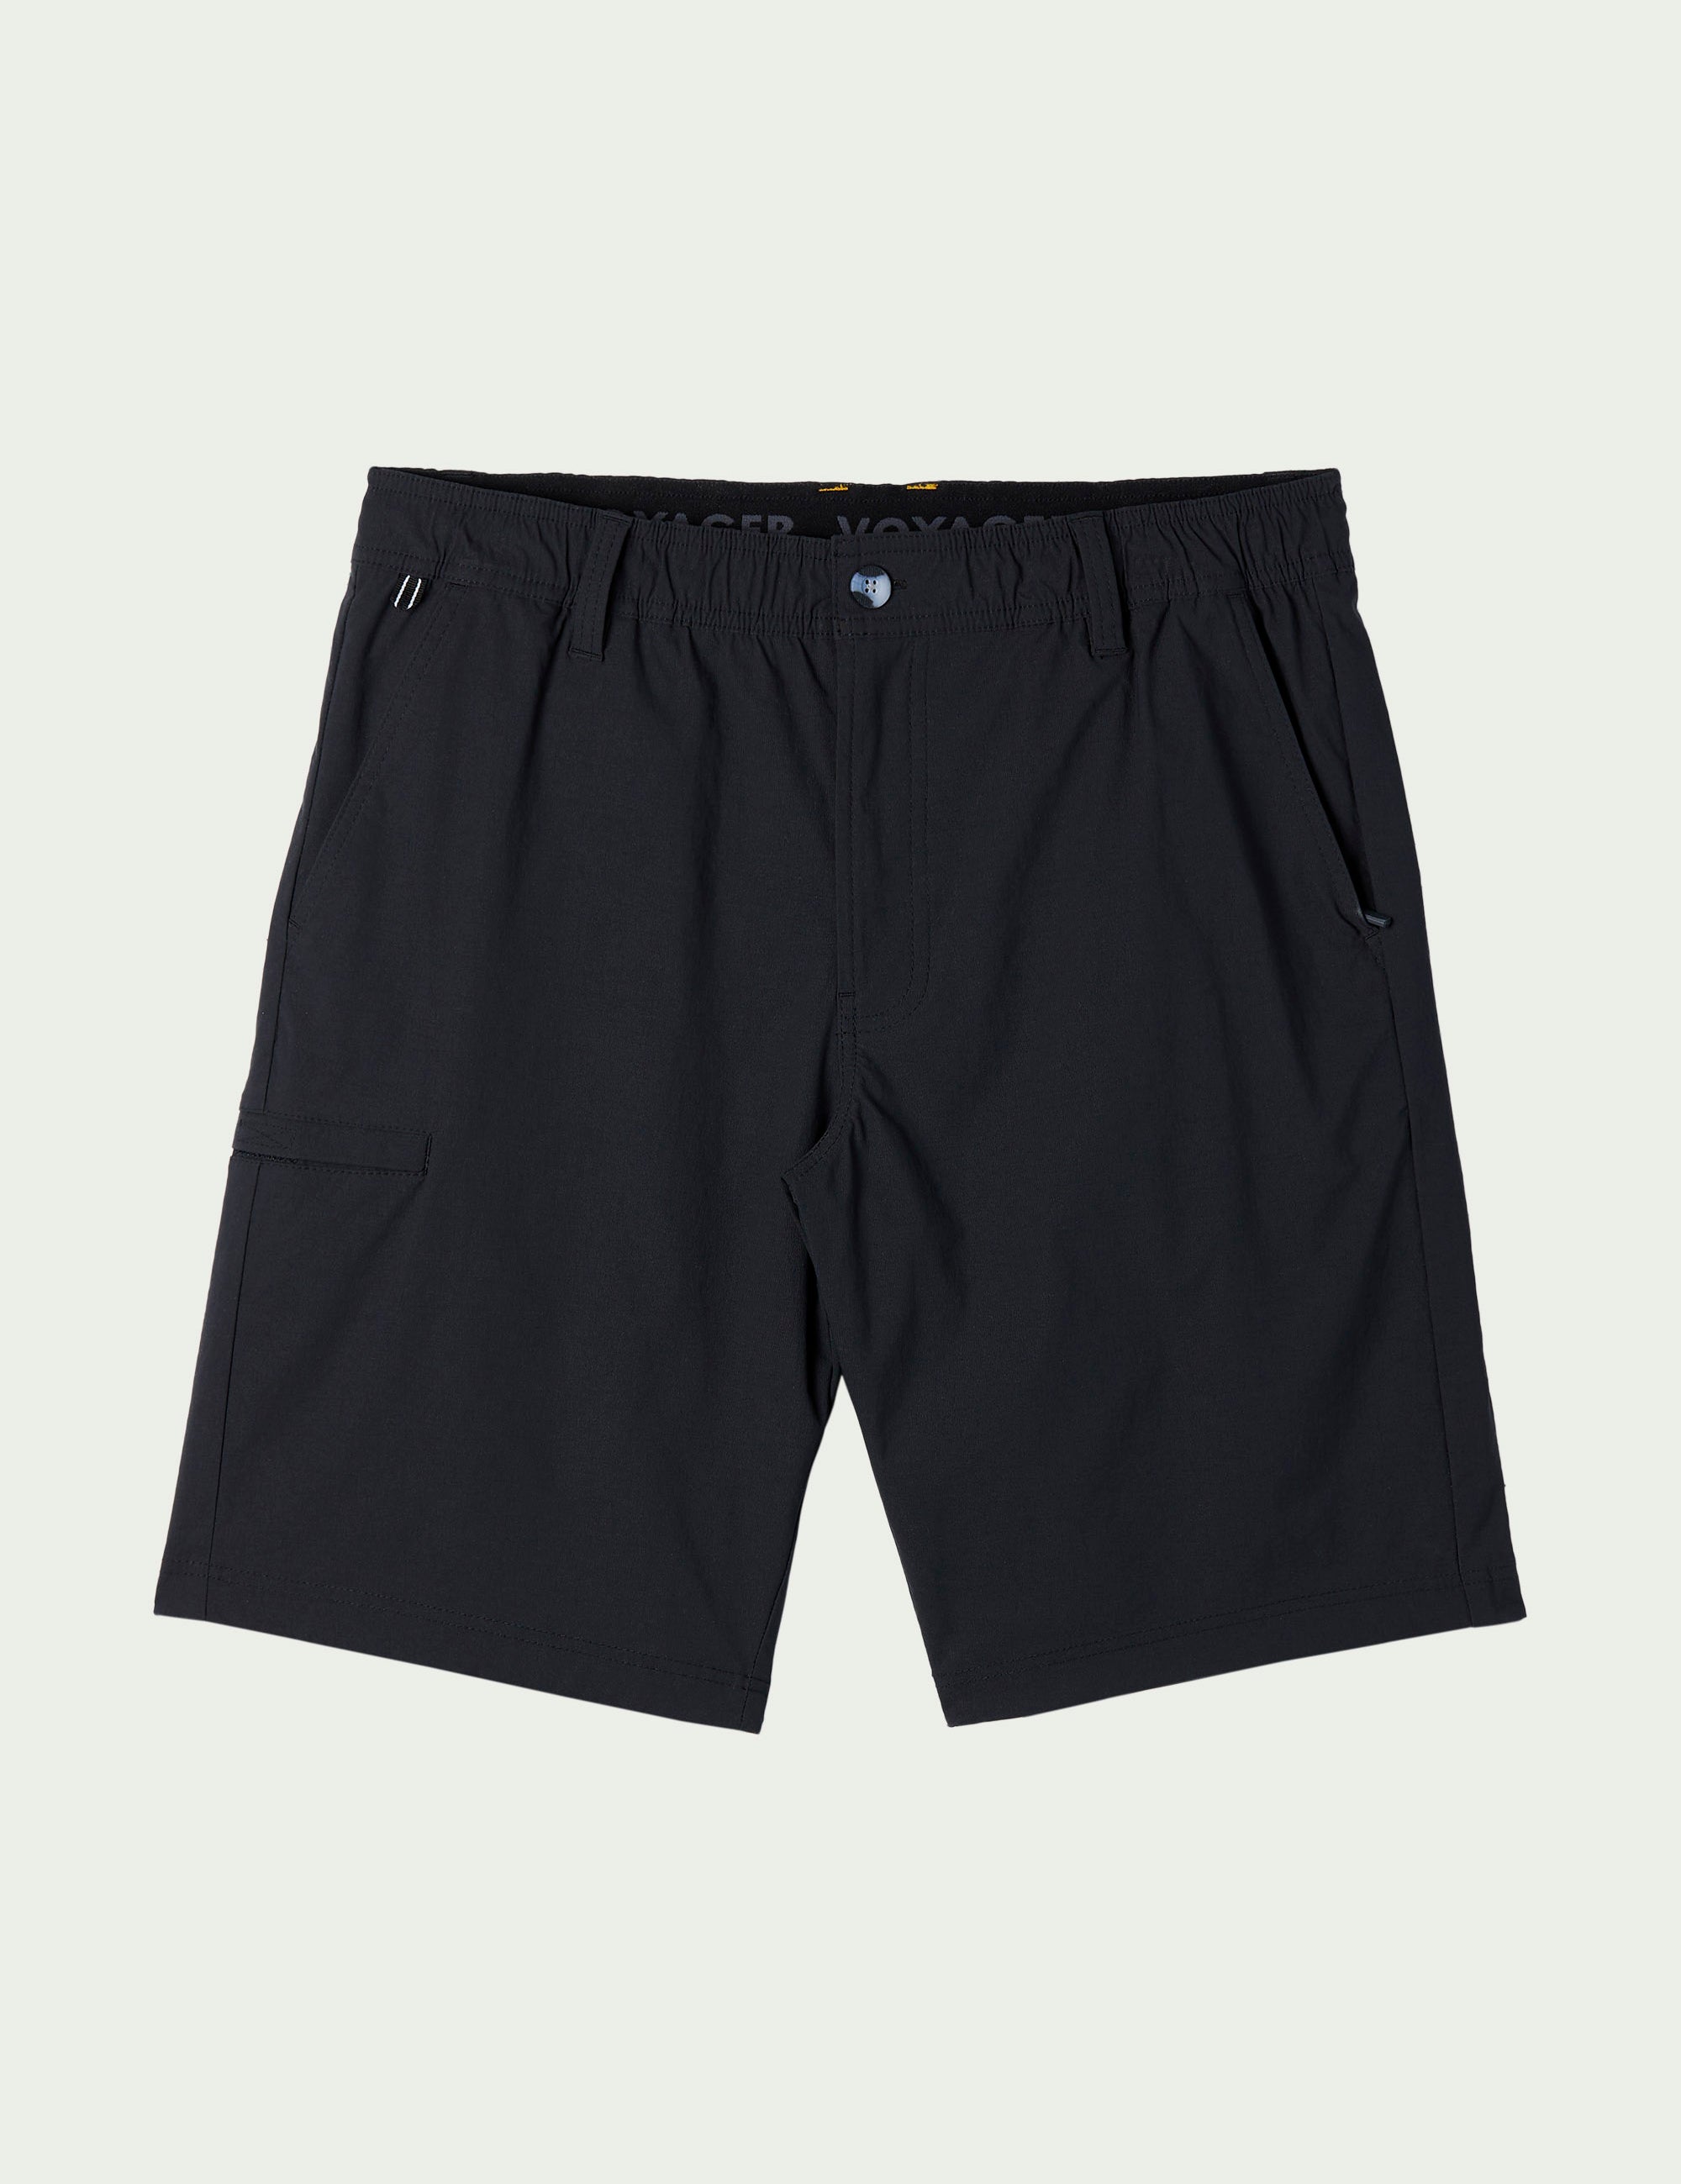 Men's Bottoms - Shorts & Pants